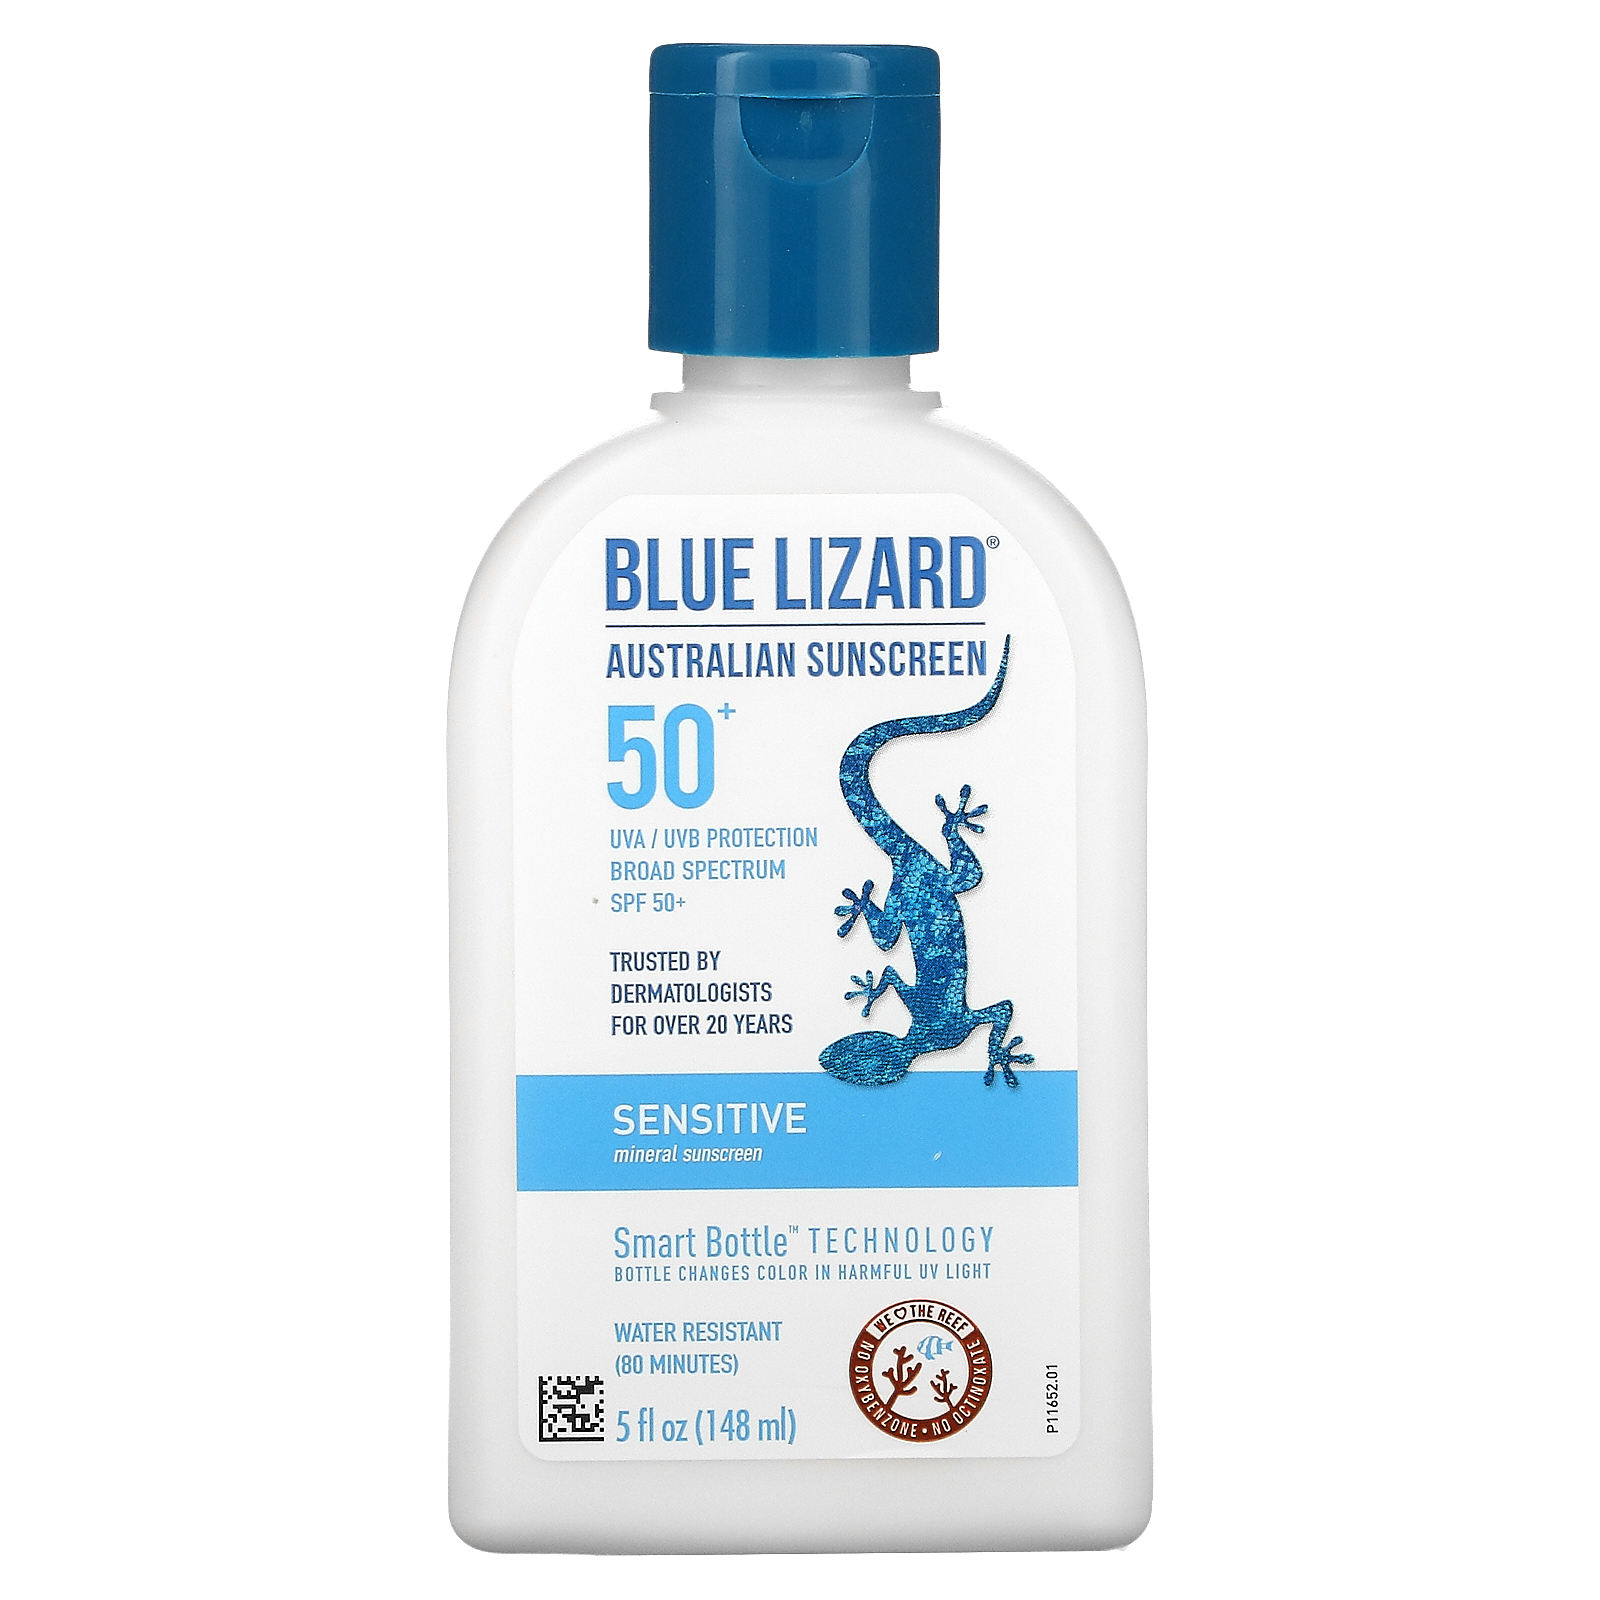 Blue Lizard Australian Sunscreen, Sensitive, Mineral Sunscreen, SPF 50+, 5 fl oz (148 ml)